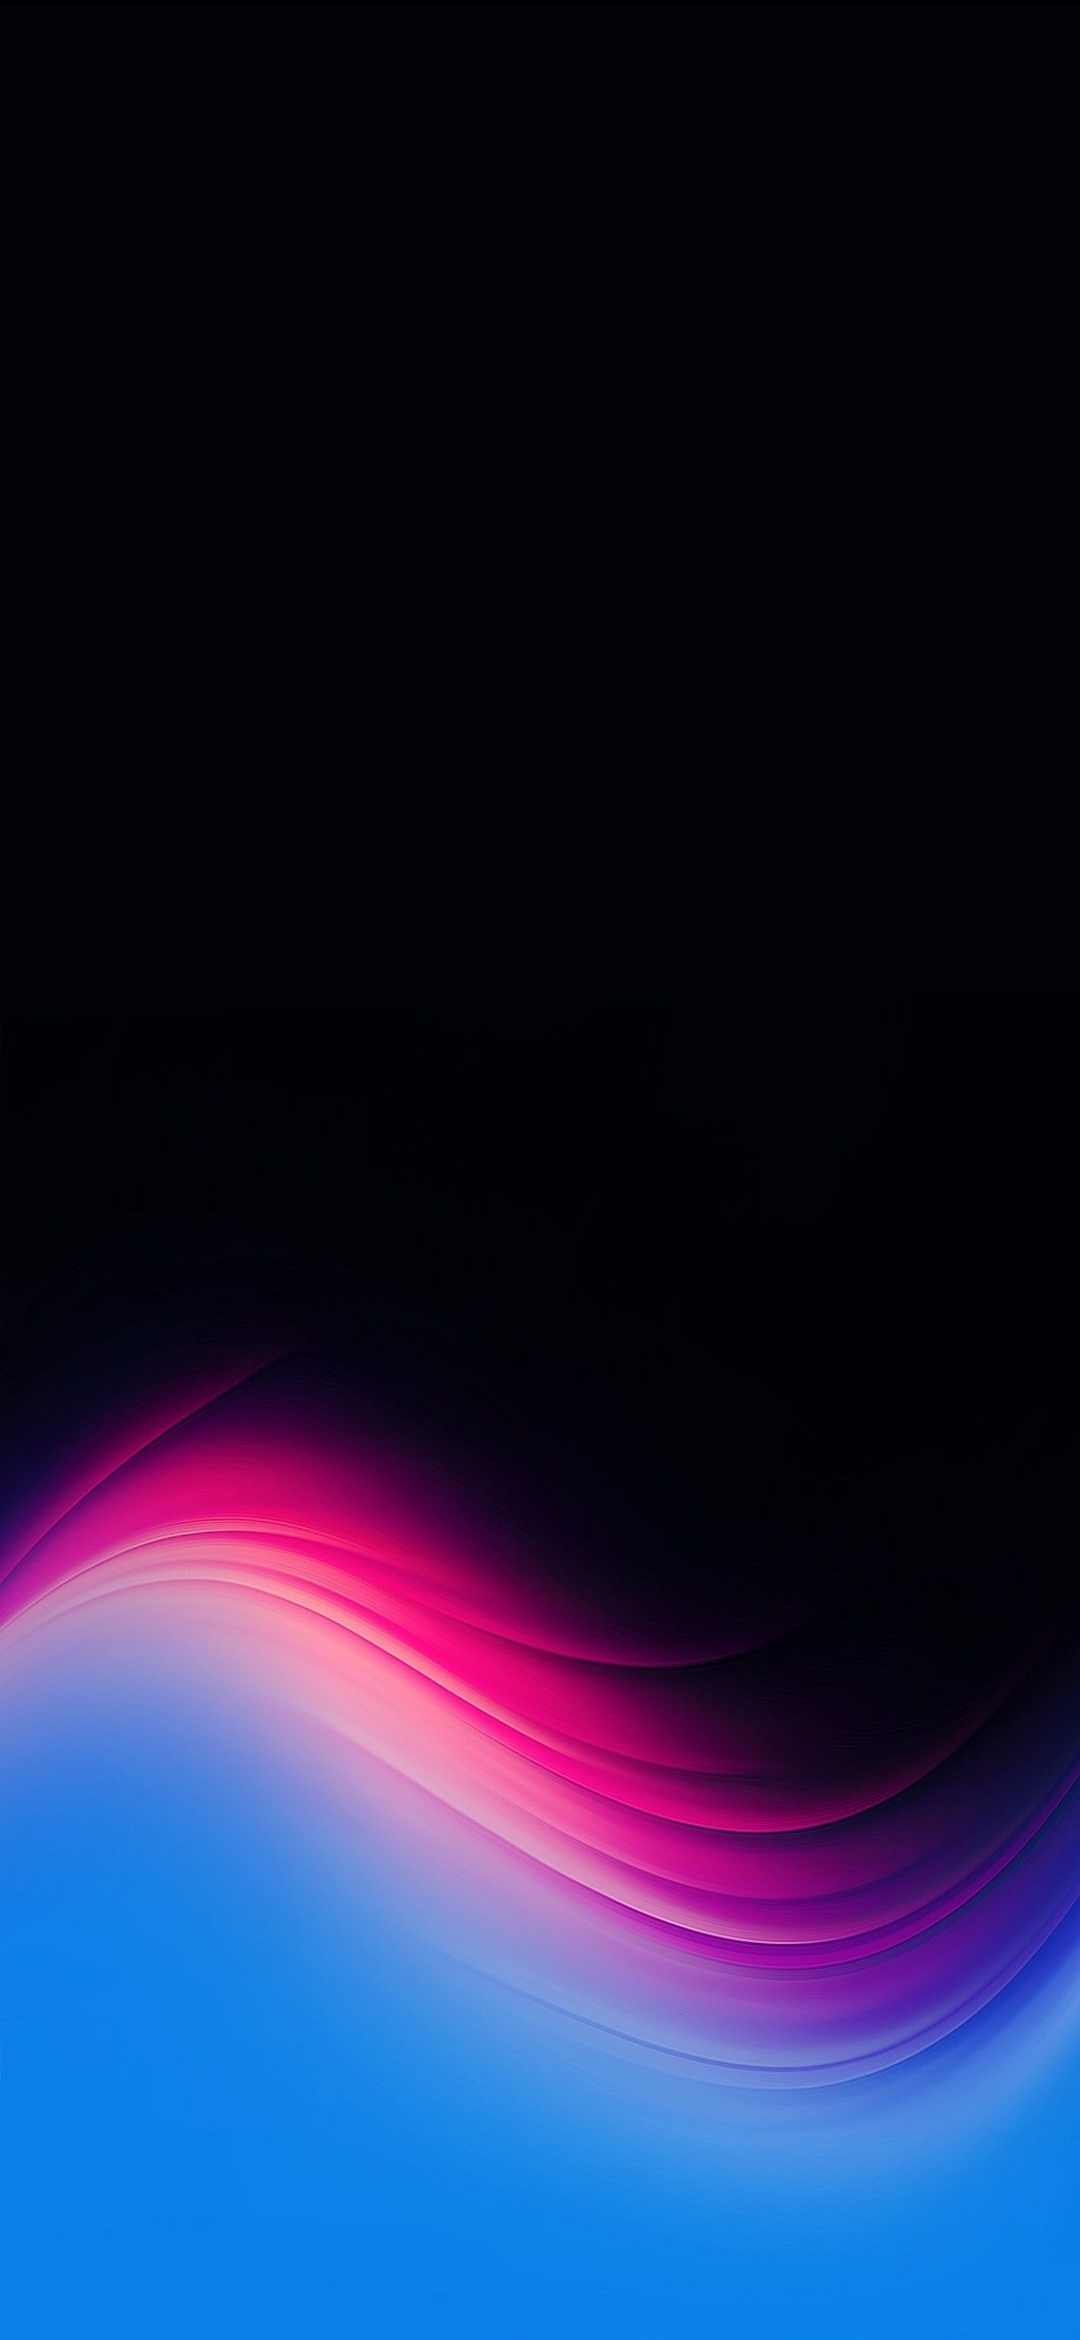 クールな水色 ピンク 黒のテクスチャー Redmagic 5 Android スマホ壁紙 待ち受け スマラン